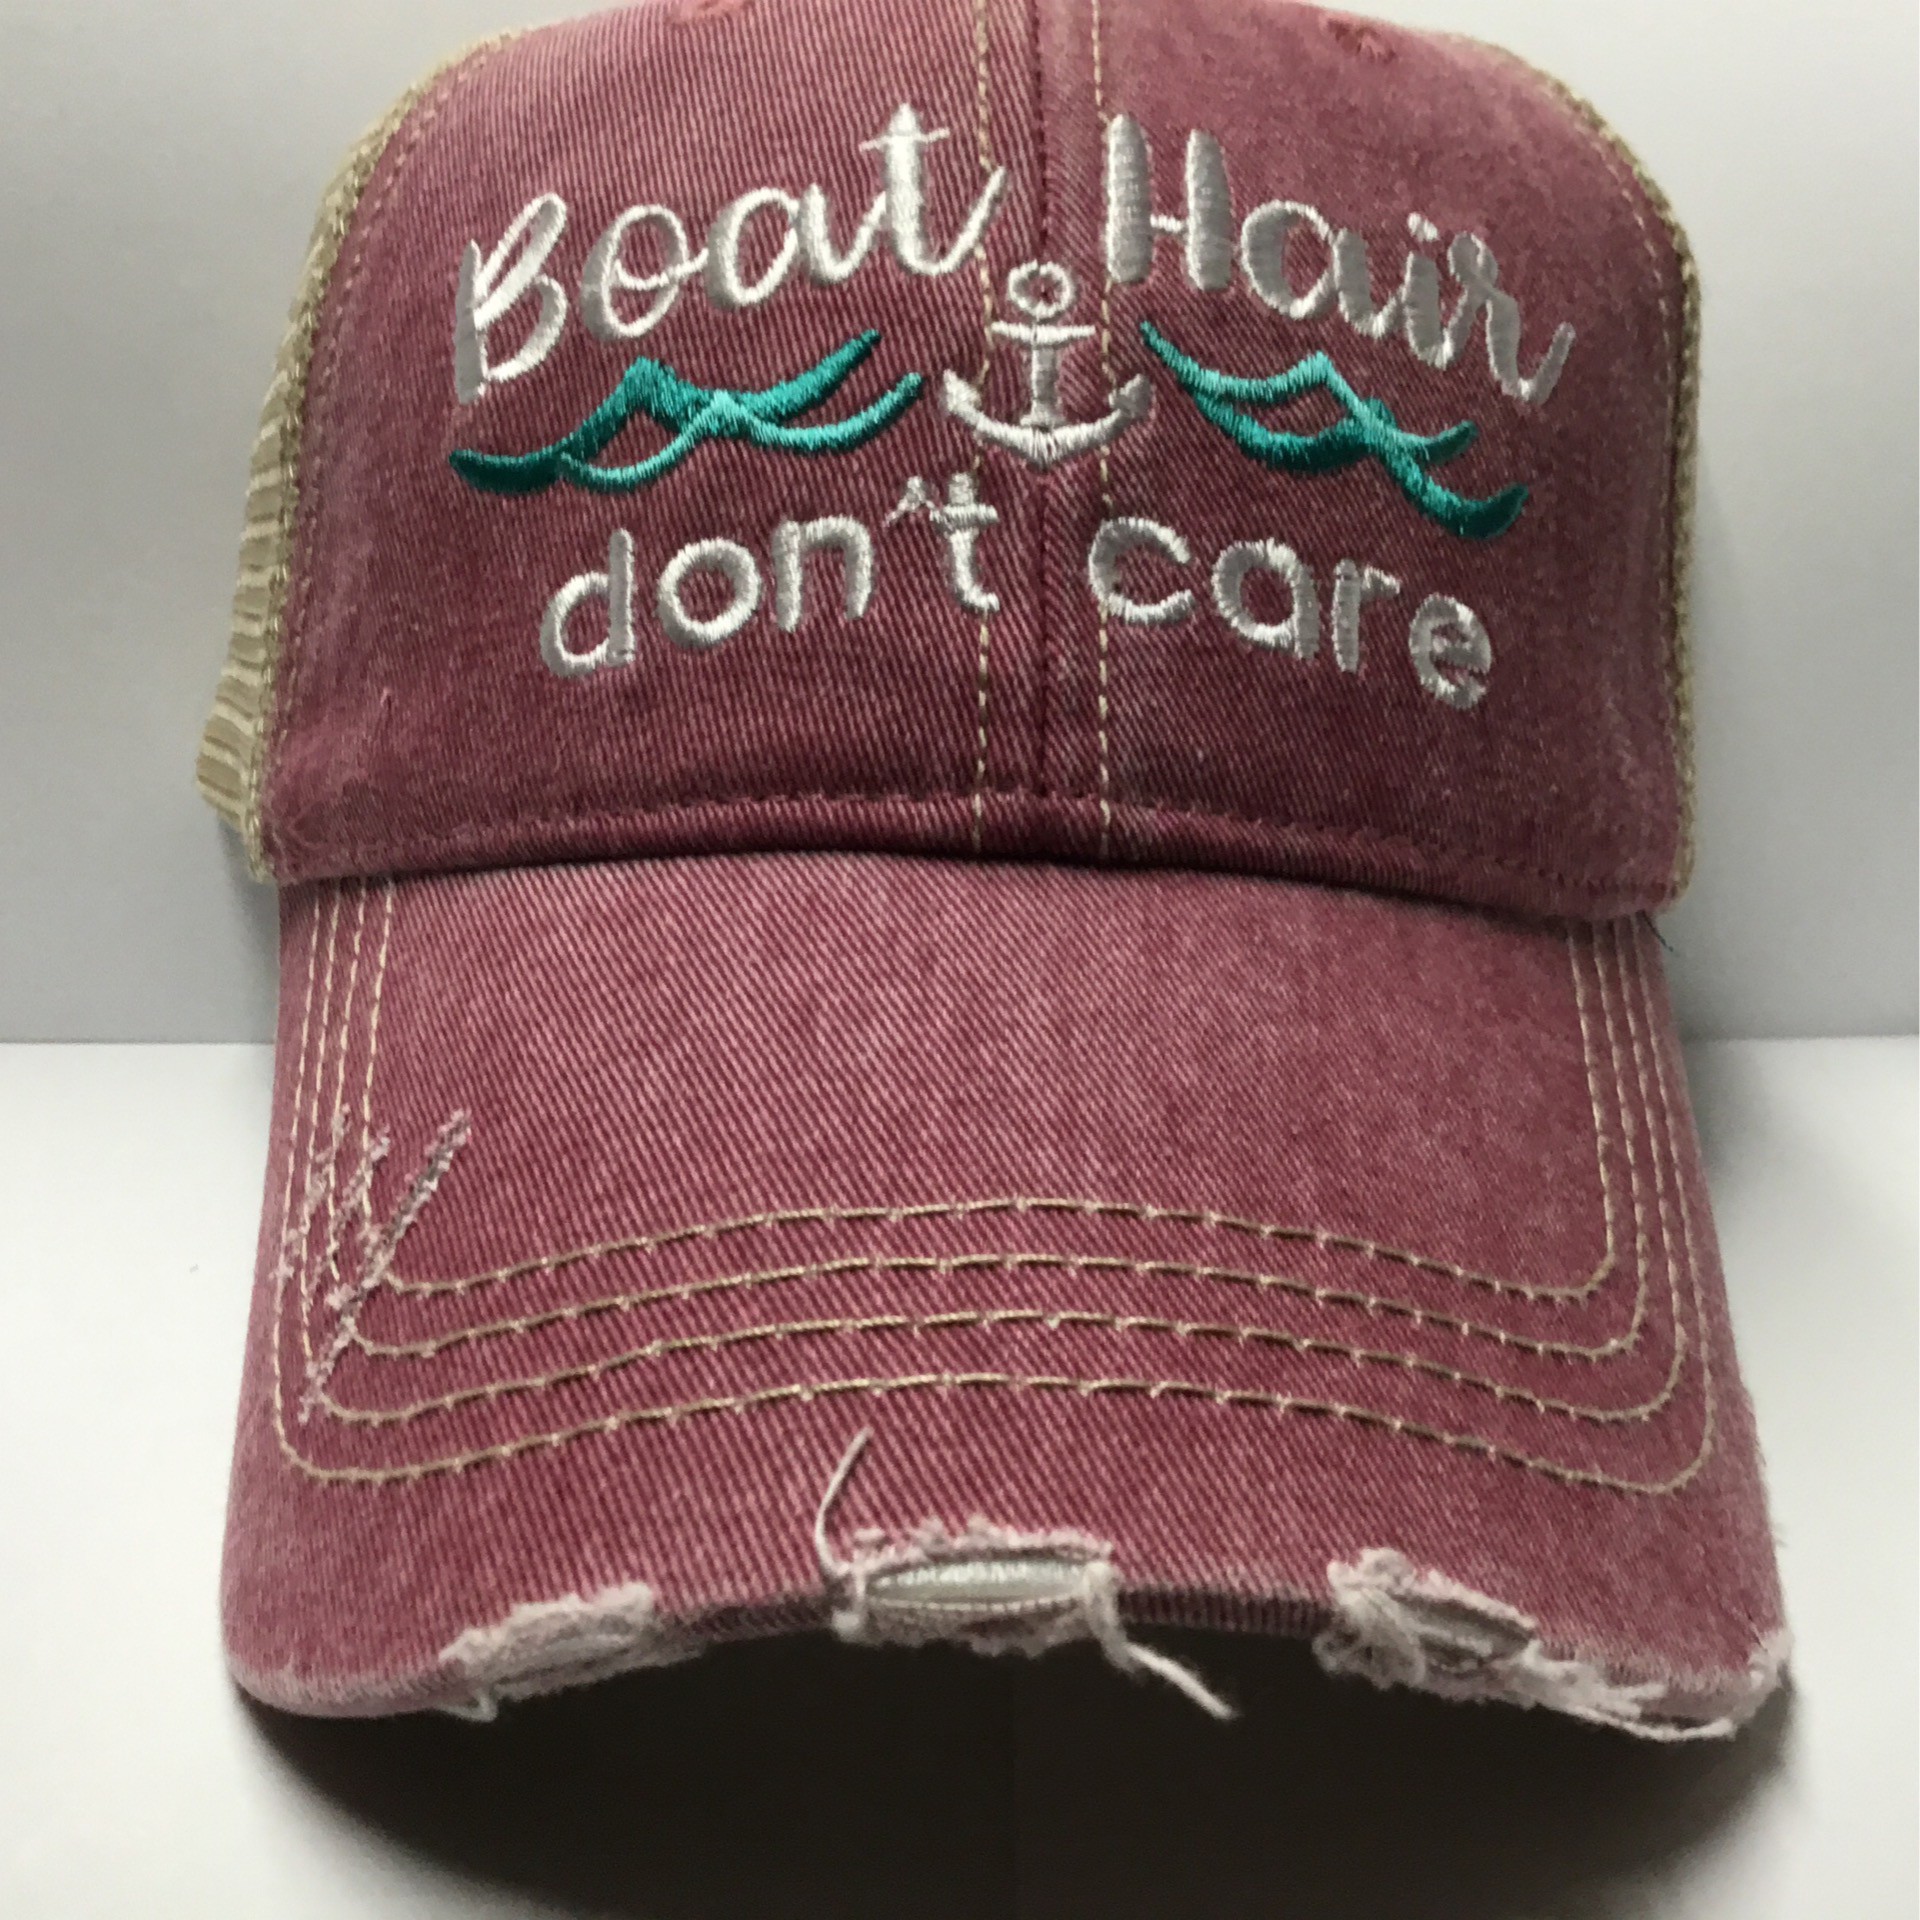 KATYDID Boat Hair Don’t Care Baseball Cap Stylish Cute Sun Hat Trucker Hat for Women 